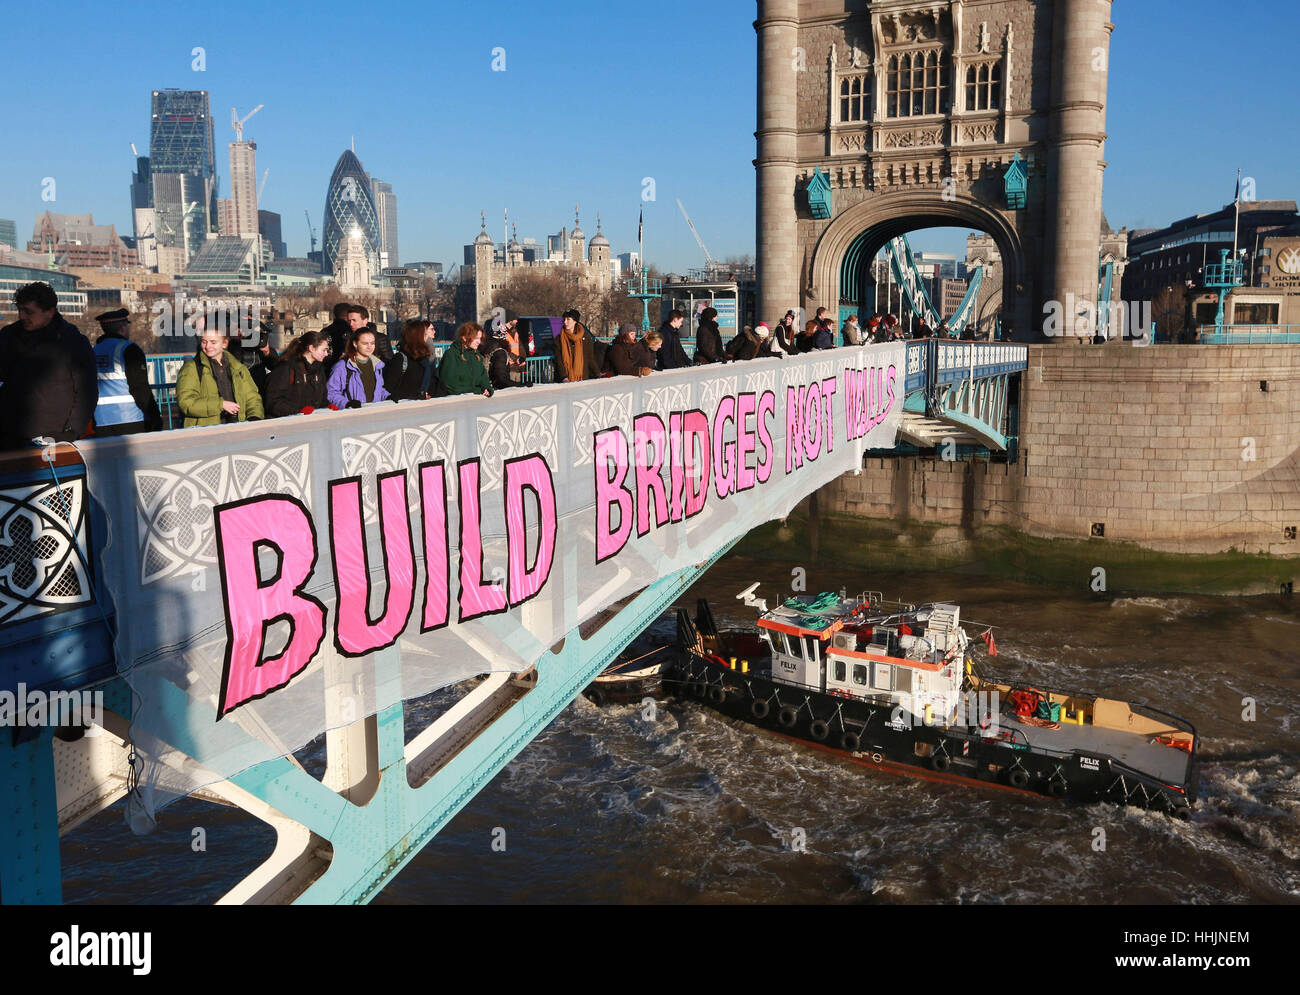 Une bannière est présentée sur le Tower Bridge de Londres, organisé par Bridges Not Walls - un partenariat entre les militants de la base et les militants qui travaillent sur une série de questions, formé à la suite de l'élection de Donald Trump, qui vise à construire des ponts vers un monde libéré de la haine et de l'oppression. Banque D'Images